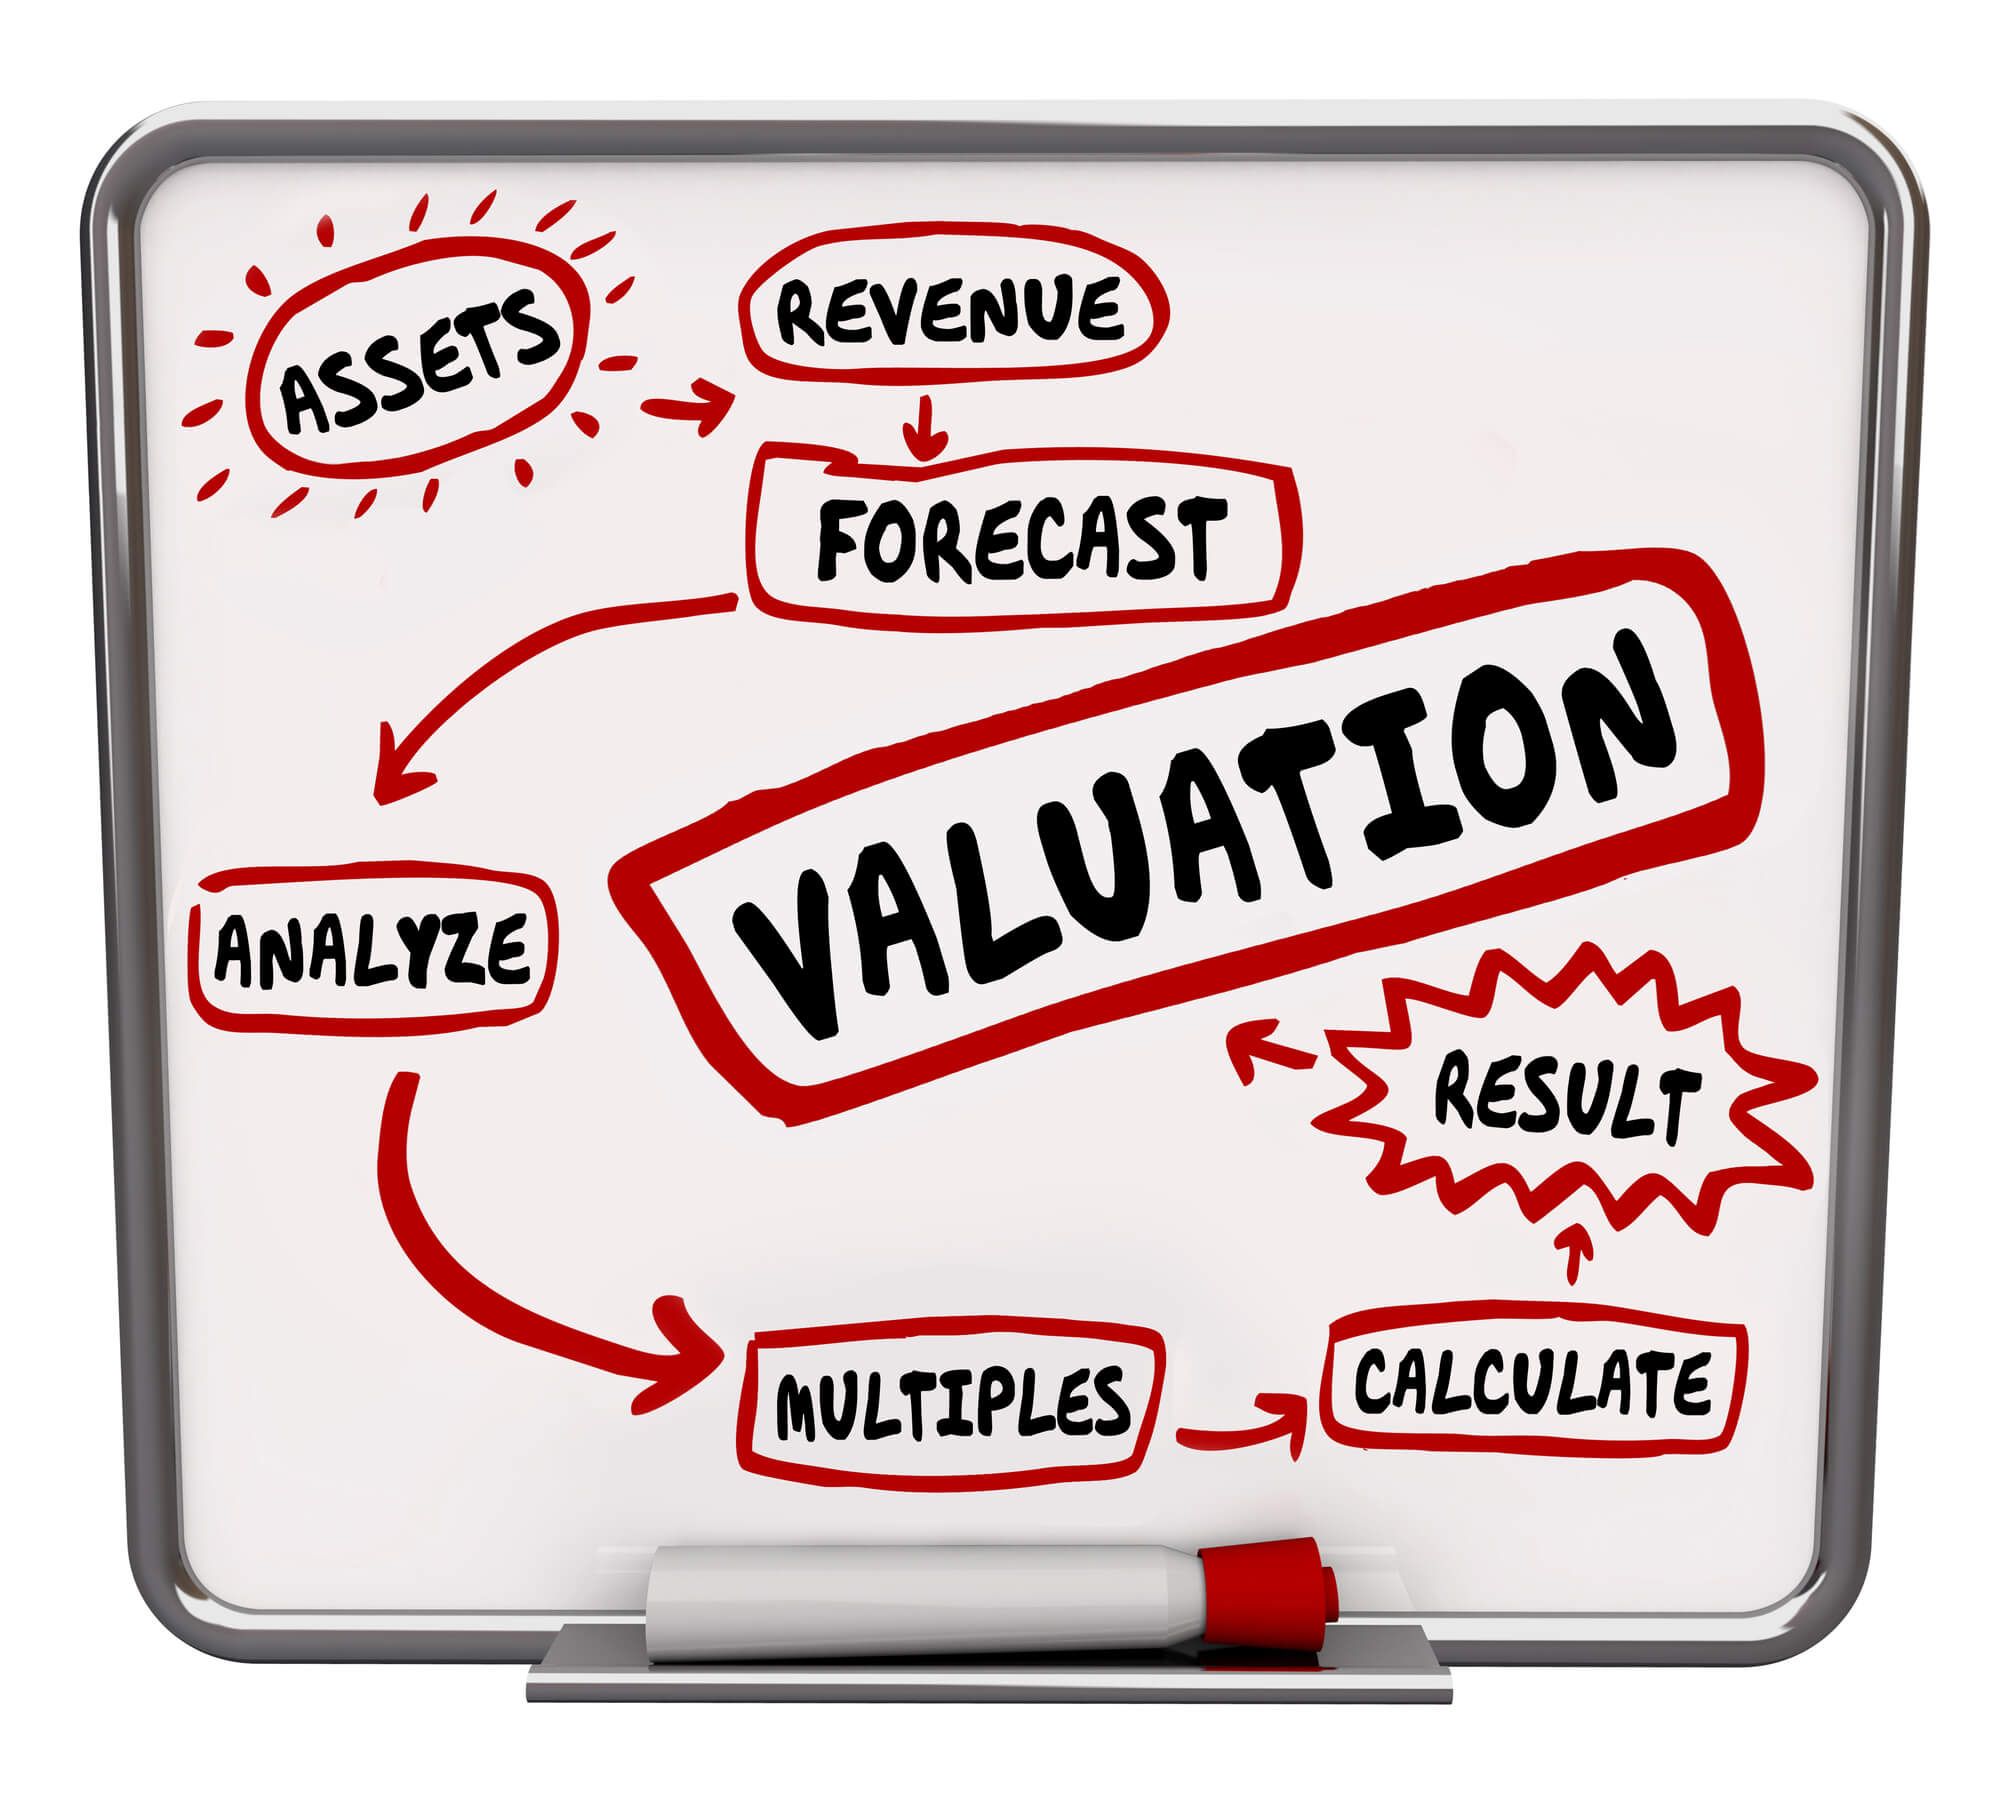 Fórmula de avaliação que calcula o patrimônio ou valor líquido da empresa ou negócio para ilustrar o cálculo de ativos, receita e múltiplos na venda da organização